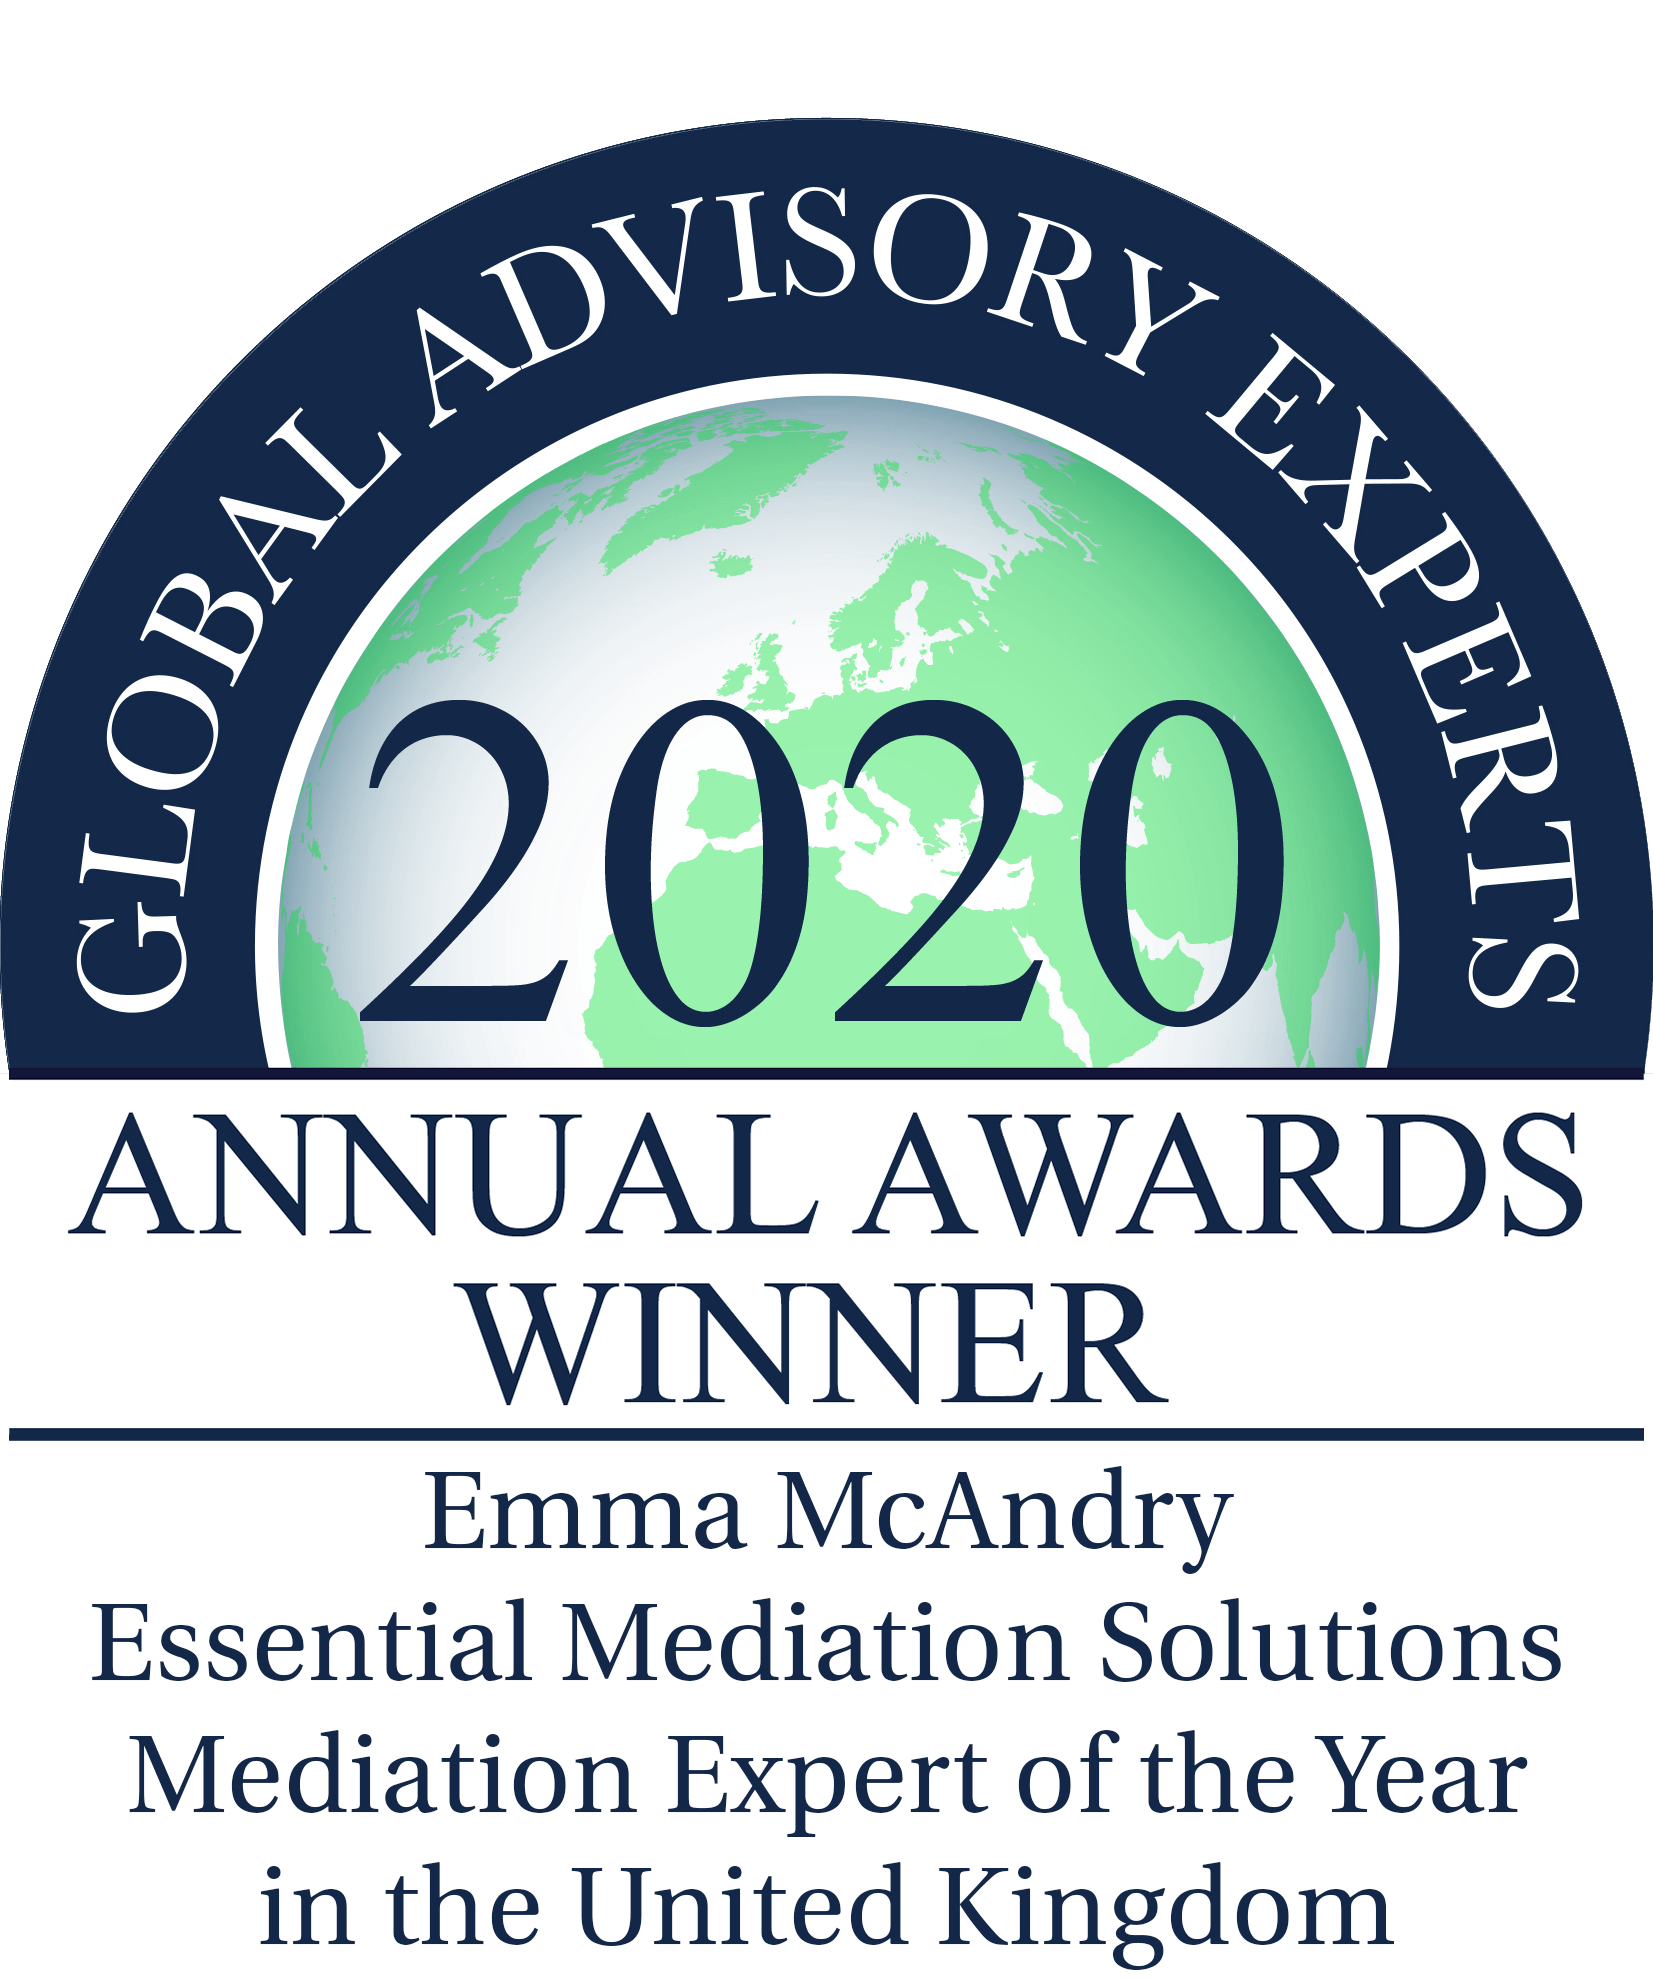 Global Advisory Experts annual awards winner 2020 logo